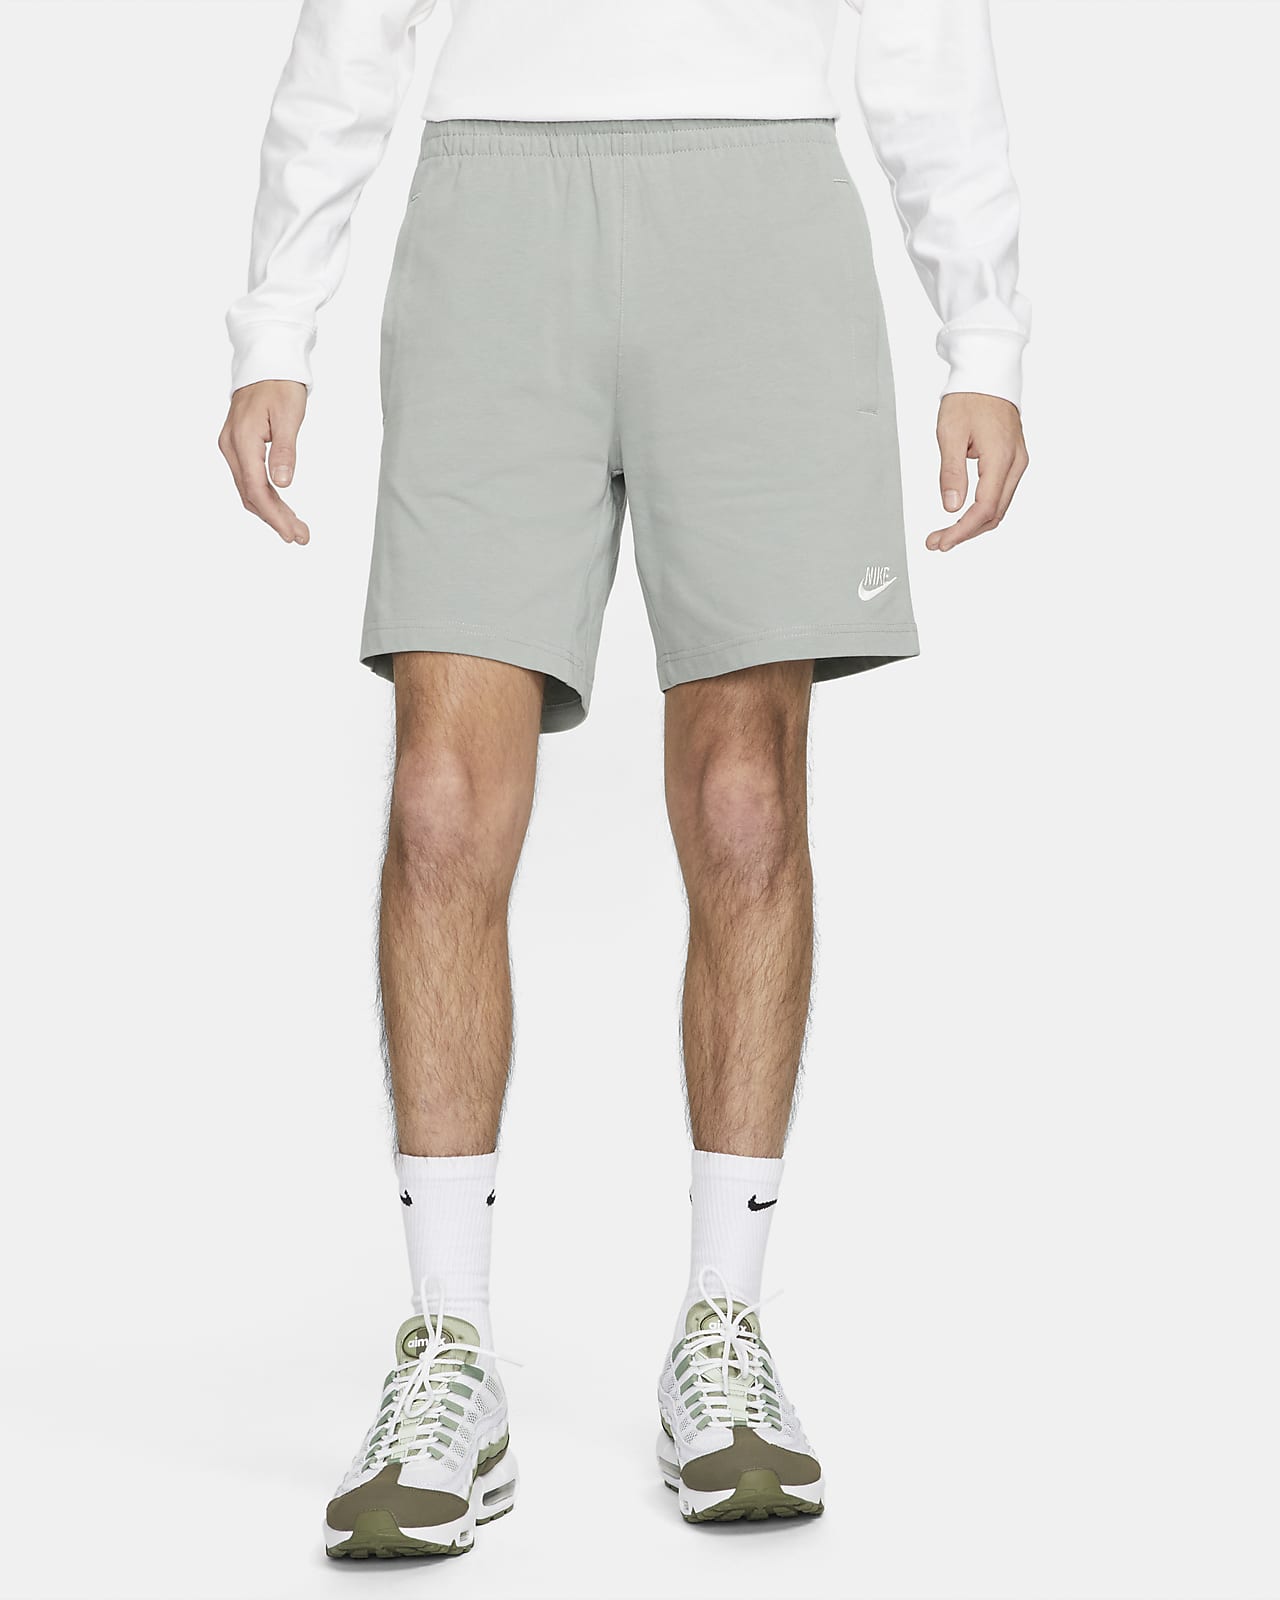 Confiar estudiar cocinero Nike Sportswear Club Pantalones cortos - Hombre. Nike ES